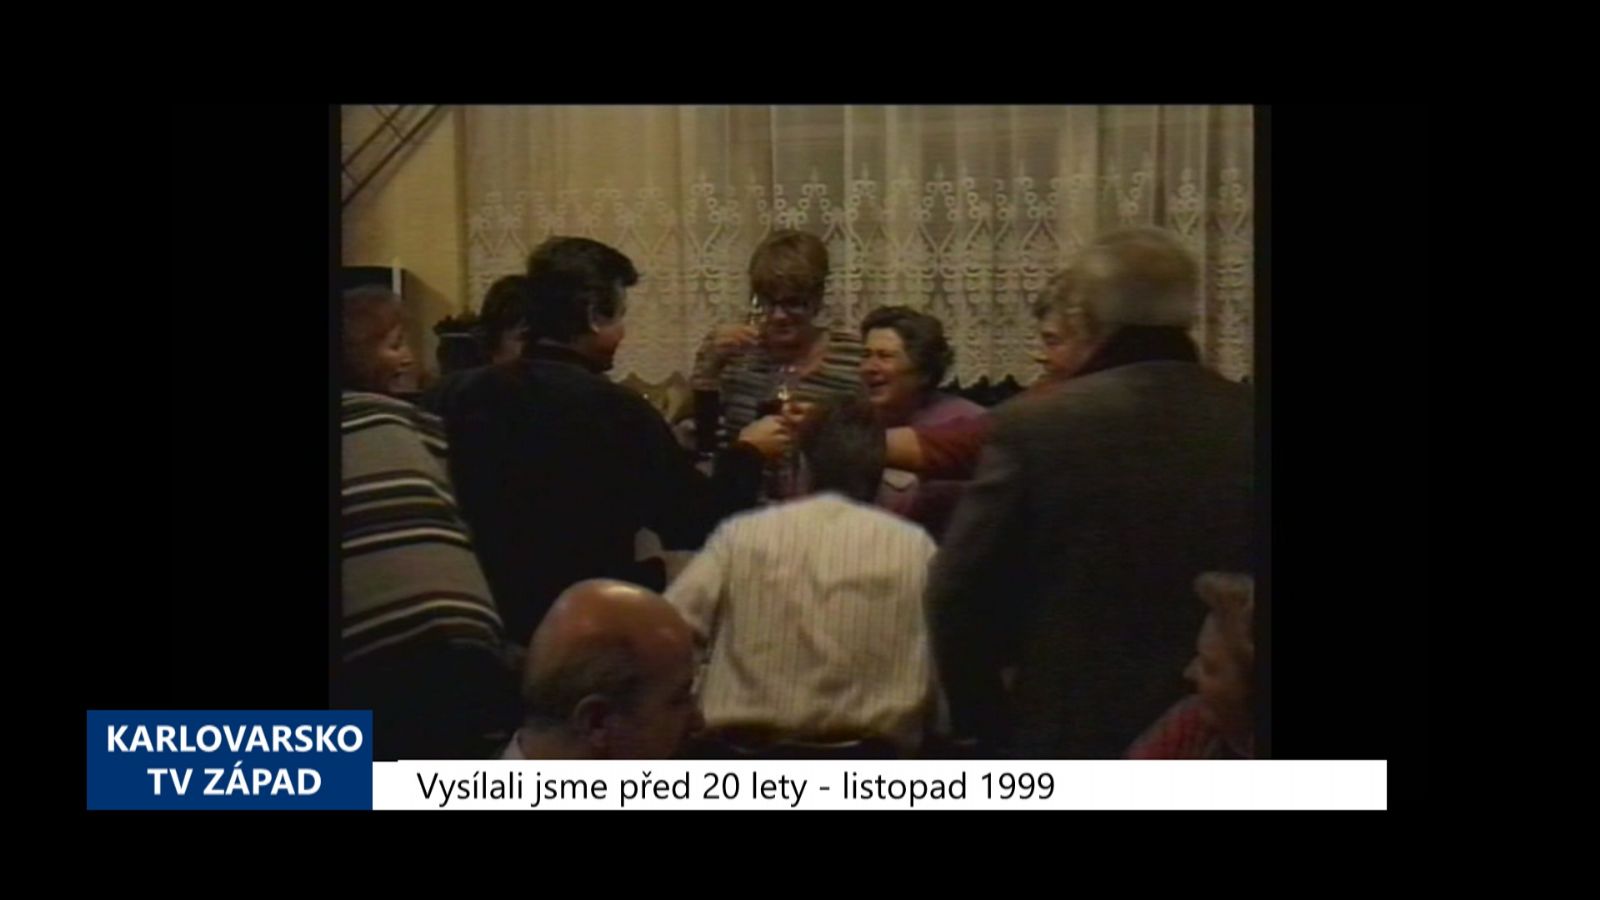 1999 – Cheb: Oslavy 10. výročí sametové revoluce byly zahájeny proslovy a přípitkem (TV Západ)